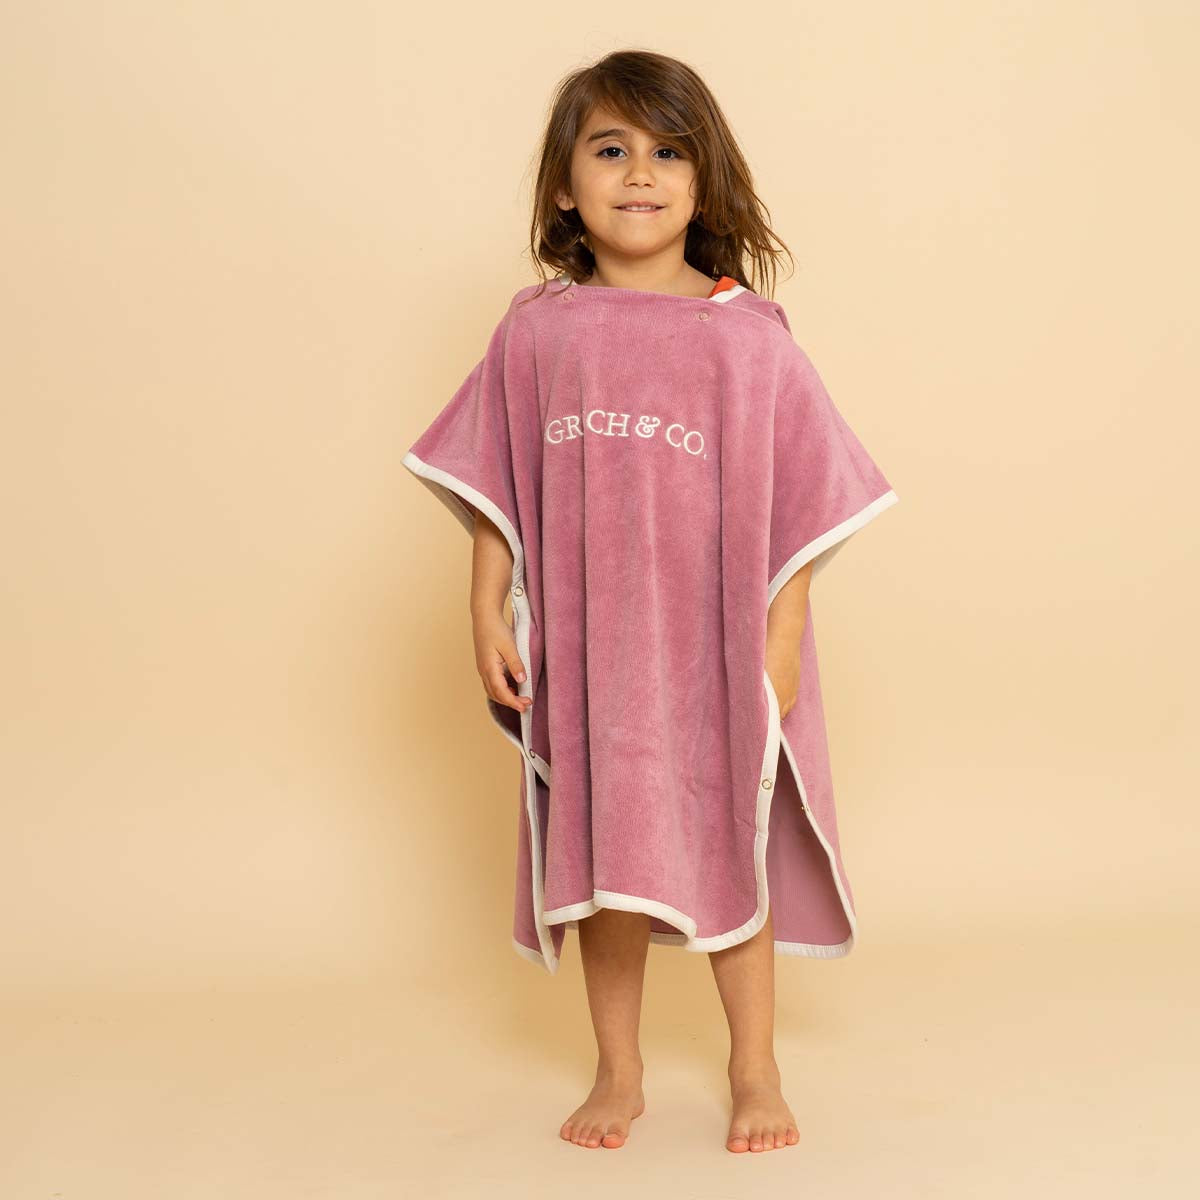 Na het badje, strand of zwembad pak je je kindje heerlijk warm in met de badponcho mauve rose van Grech & Co. Opdrogen, warm worden en comfortabel zijn. De badcape heeft een capuchon en drukknoopjes. VanZus